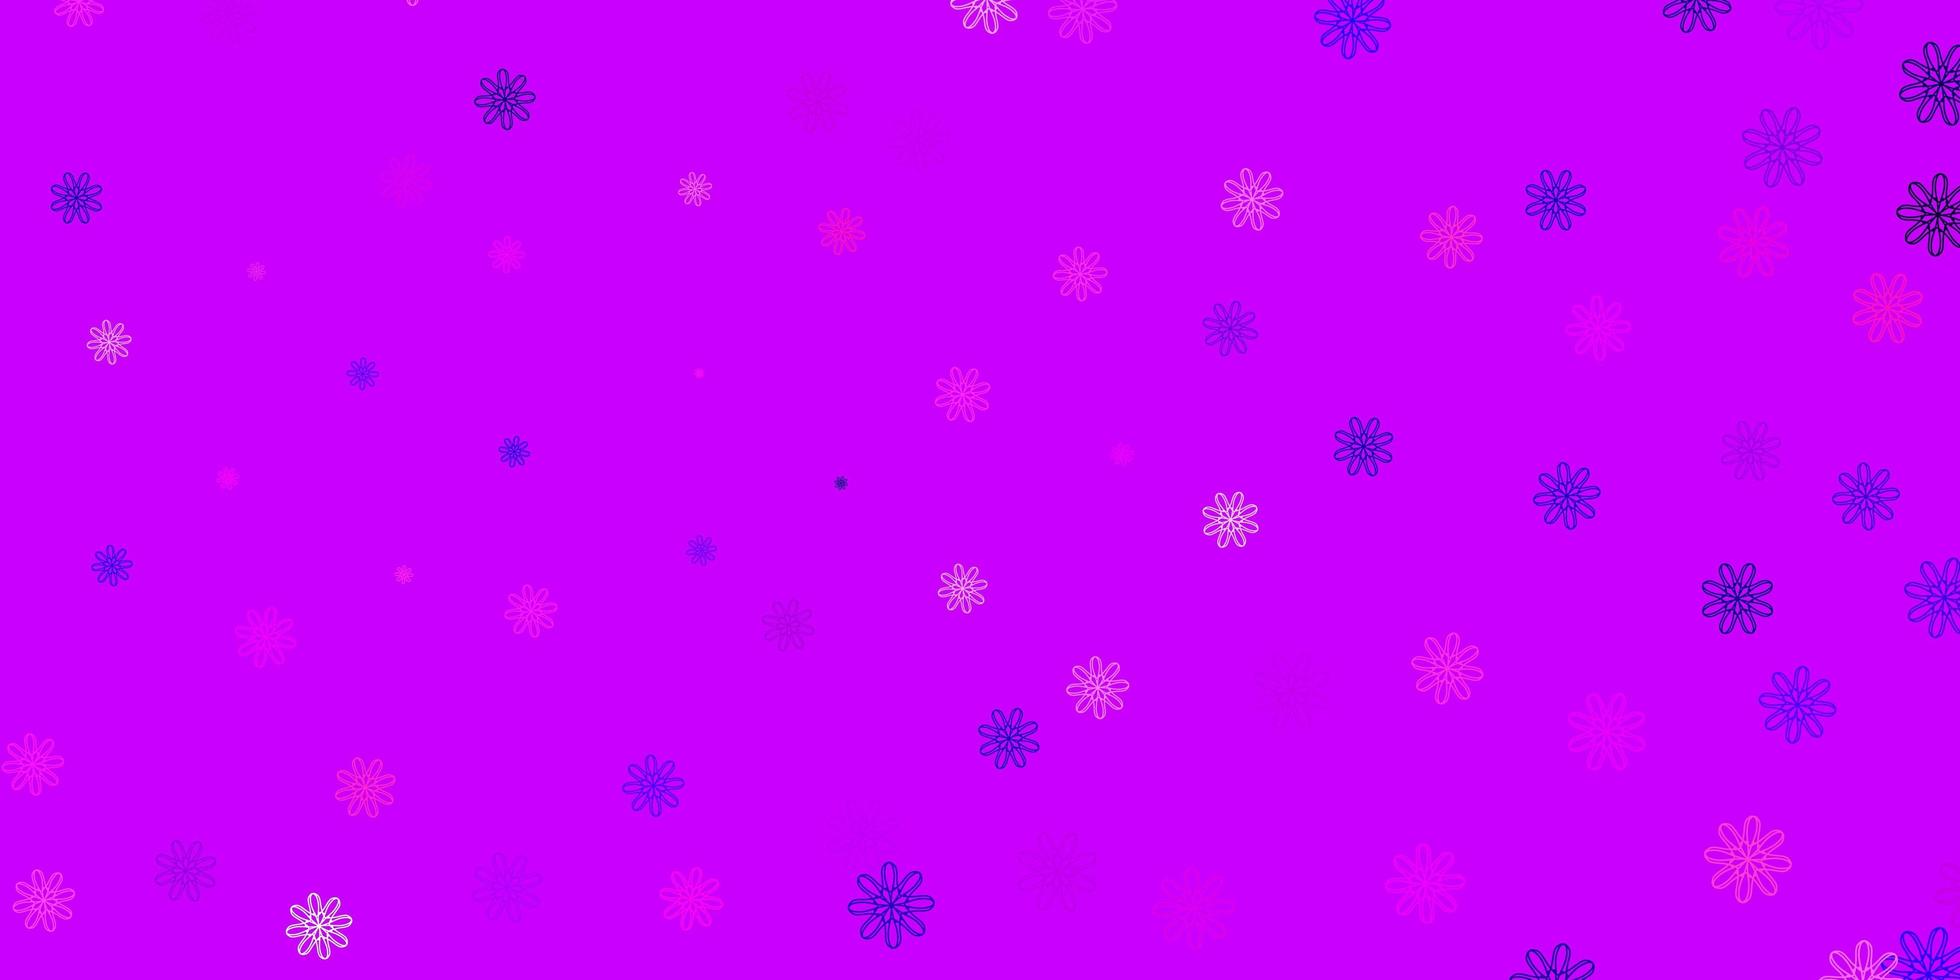 hellviolettes, rosa Vektor-Gekritzelmuster mit Blumen. vektor